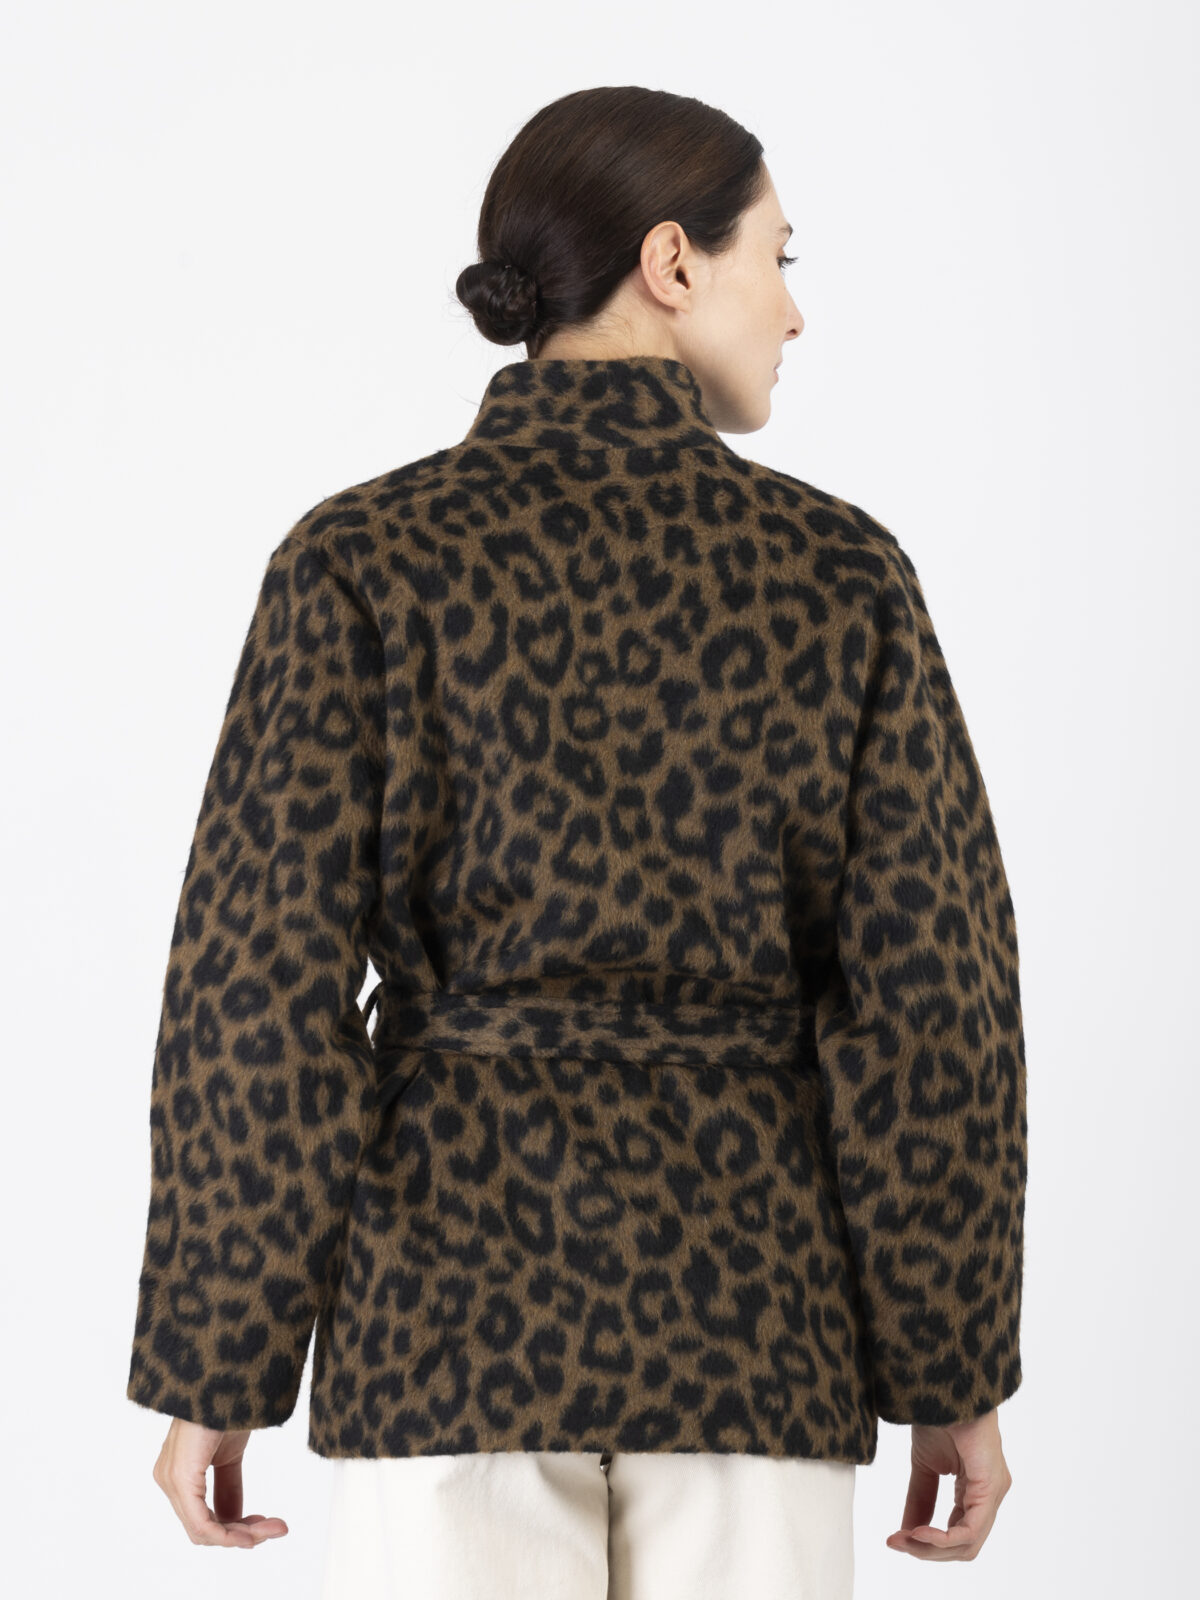 viveka-leopard-jacket-warm-blet-wait-buttons-pockets-lapetitefrancaise-matchboxathens